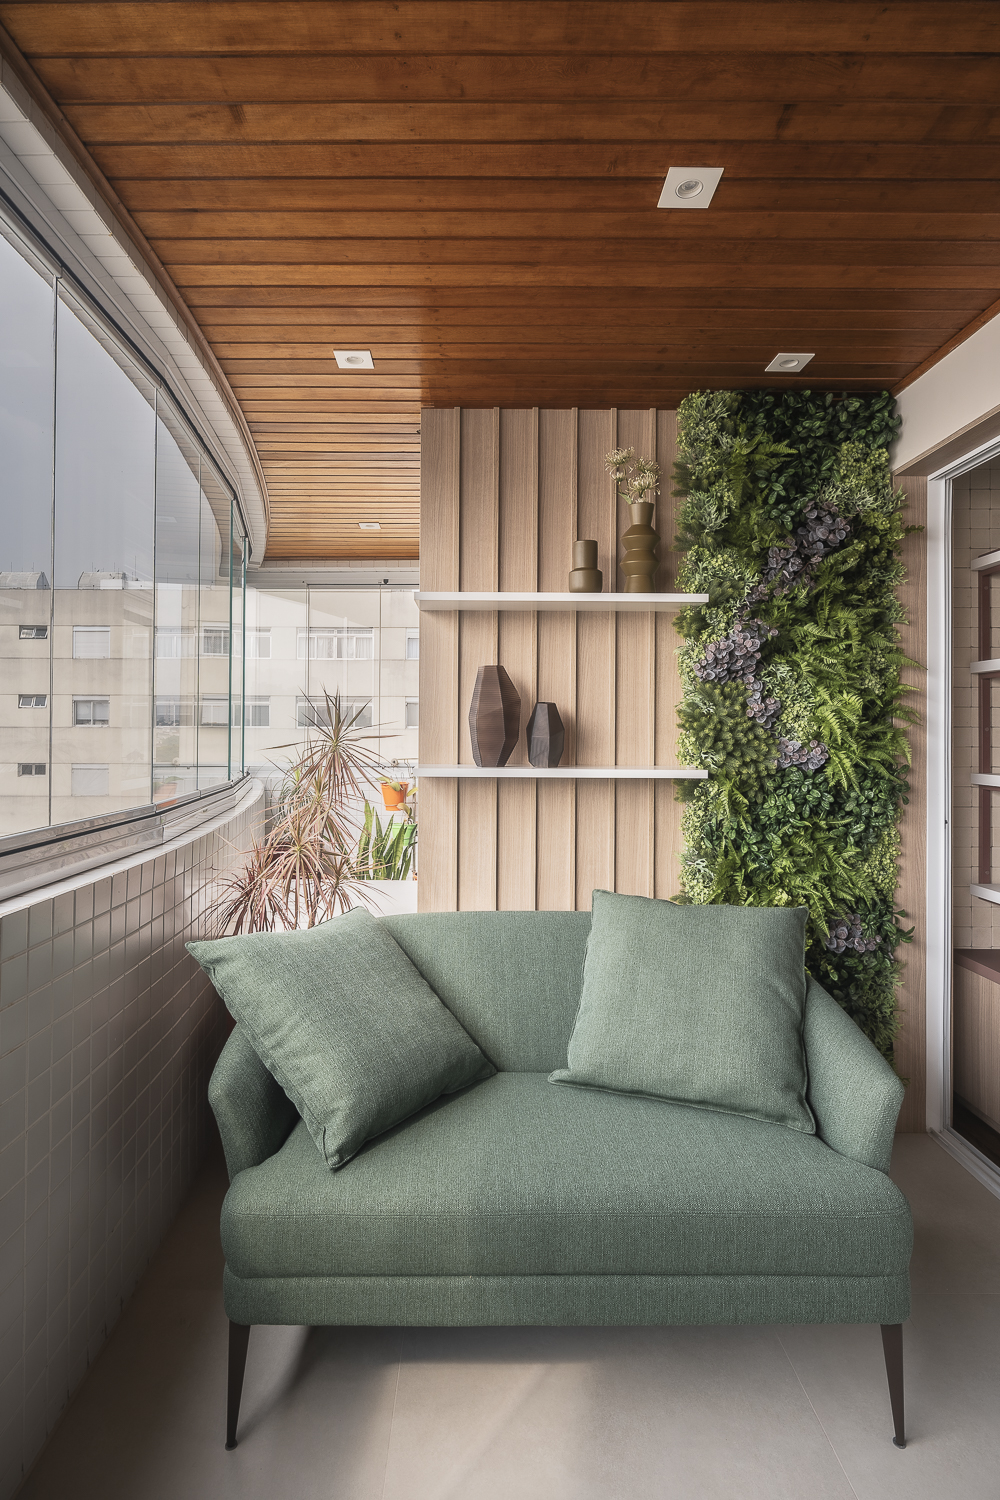 Projeto de Studio Ricciardi. Na foto, varanda com teto de madeira, sofá verde, mesa redonda pequena e marcenaria para plantas.